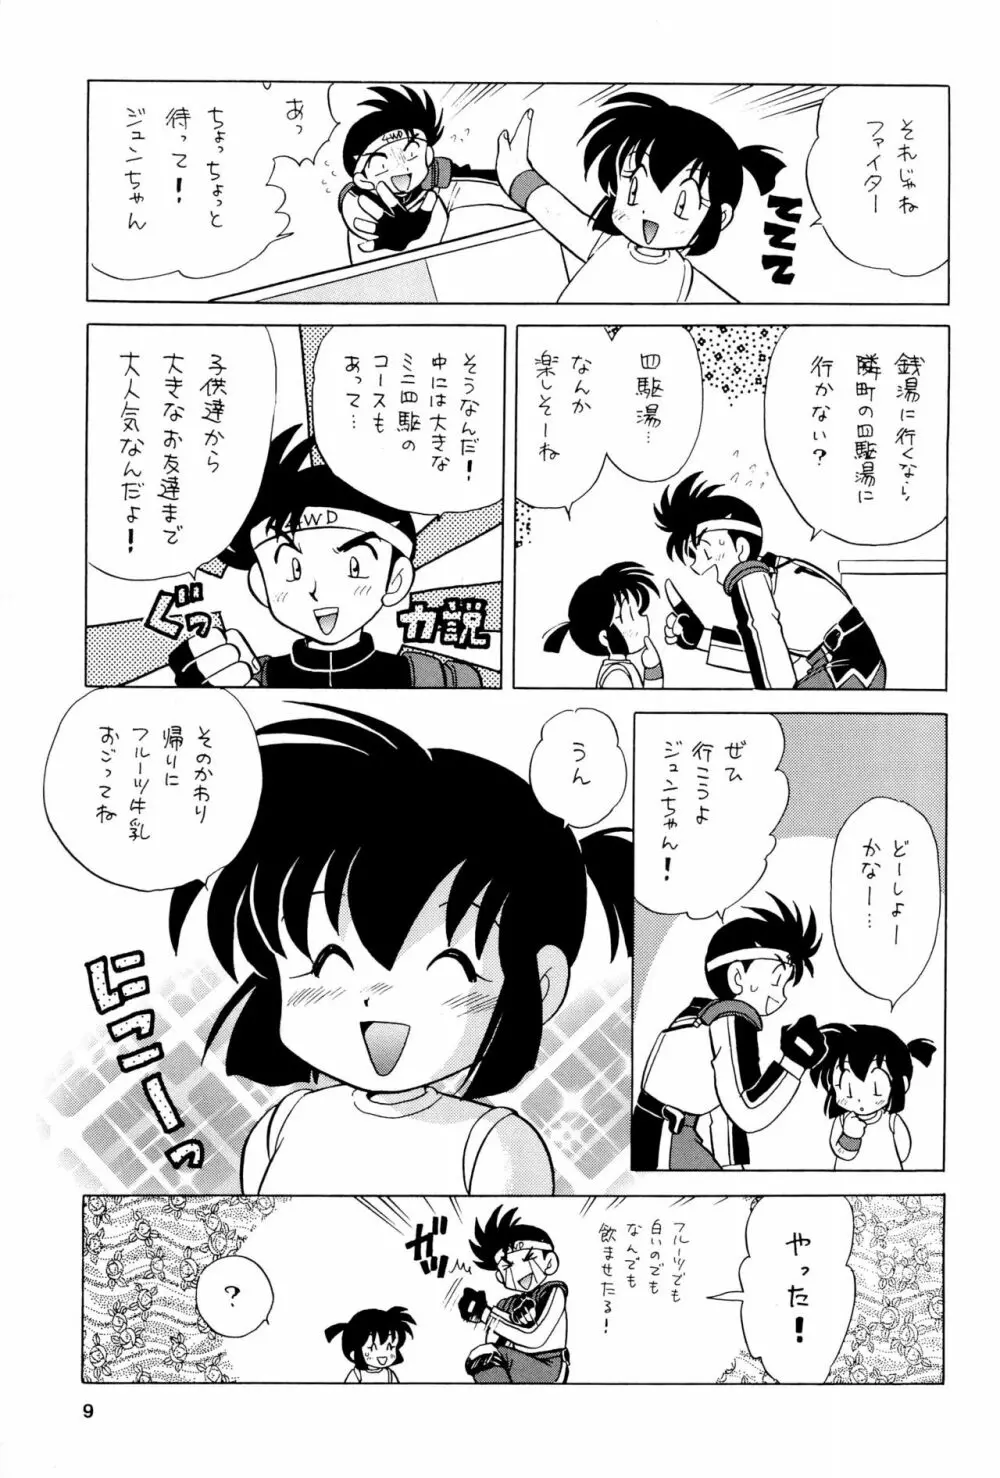 四駆遊戯 巻之弐 9ページ